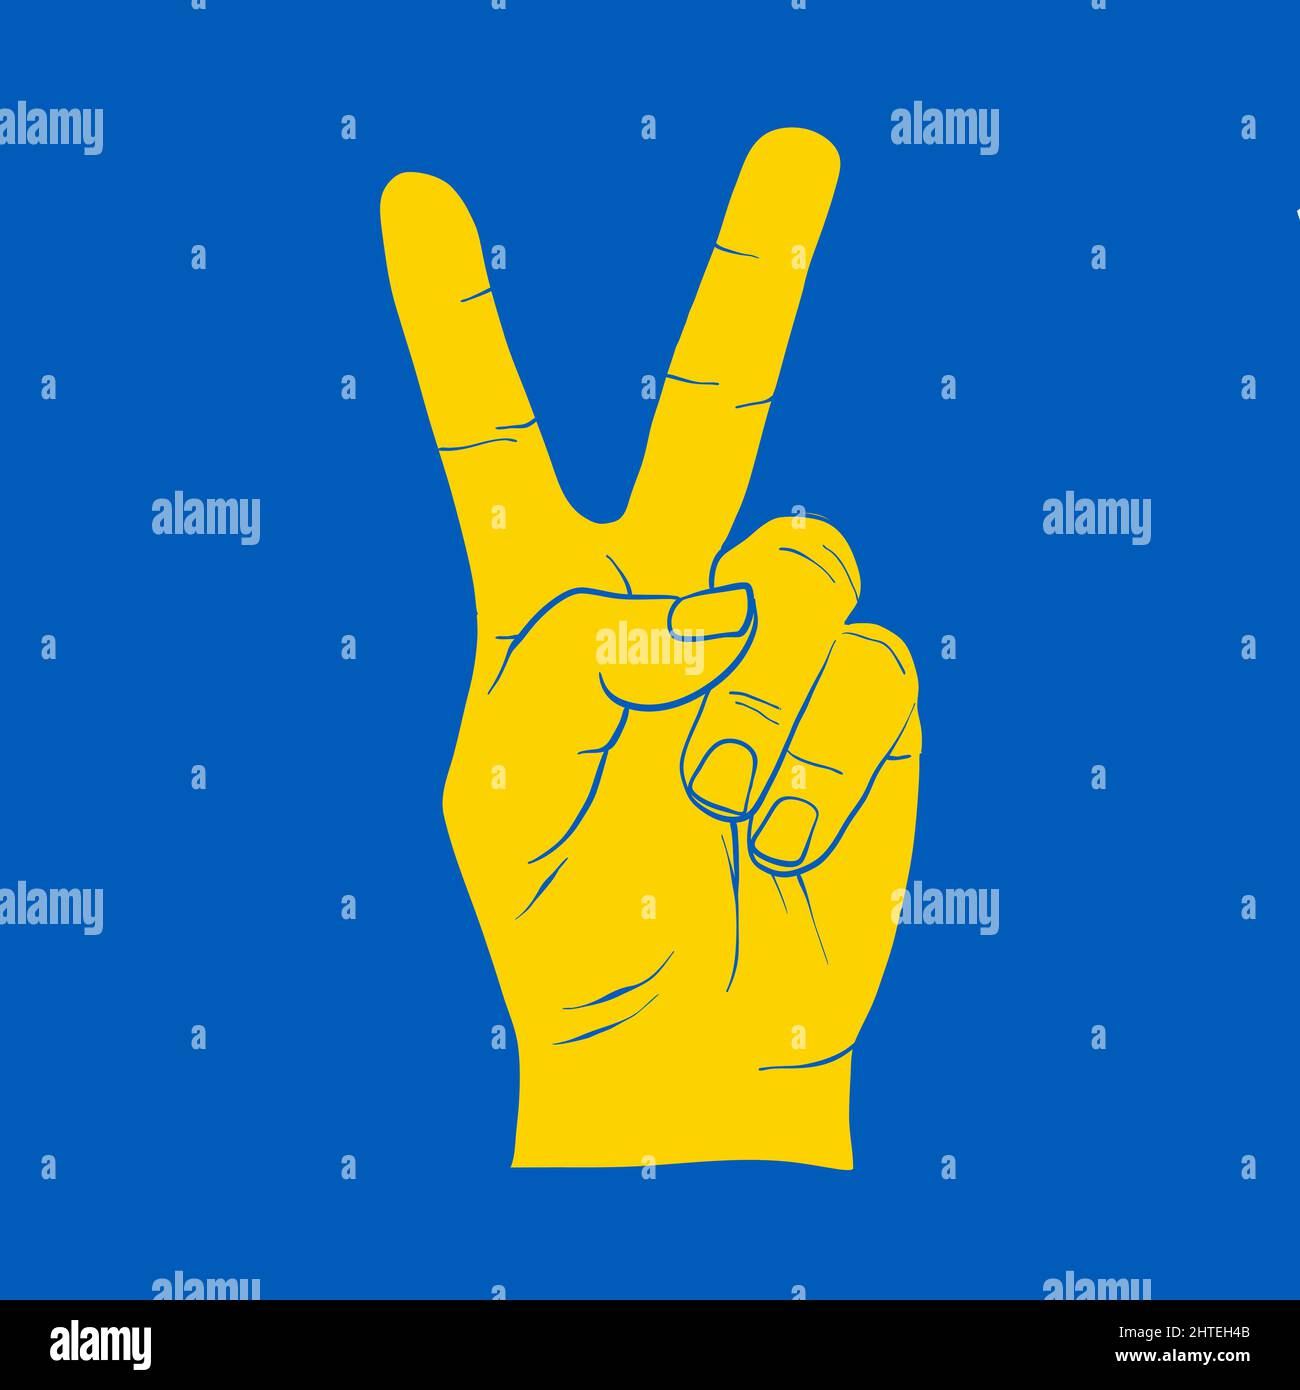 Gelbe Friedenshand Symbol Freiheit für die ukraine auf blau. Symbol für die Unterstützung der Menschen in Kiew und der Ukraine. Gemeinsam stark bleiben. Patriotisches Symbol, Symbol.-Suppleme Stock Vektor